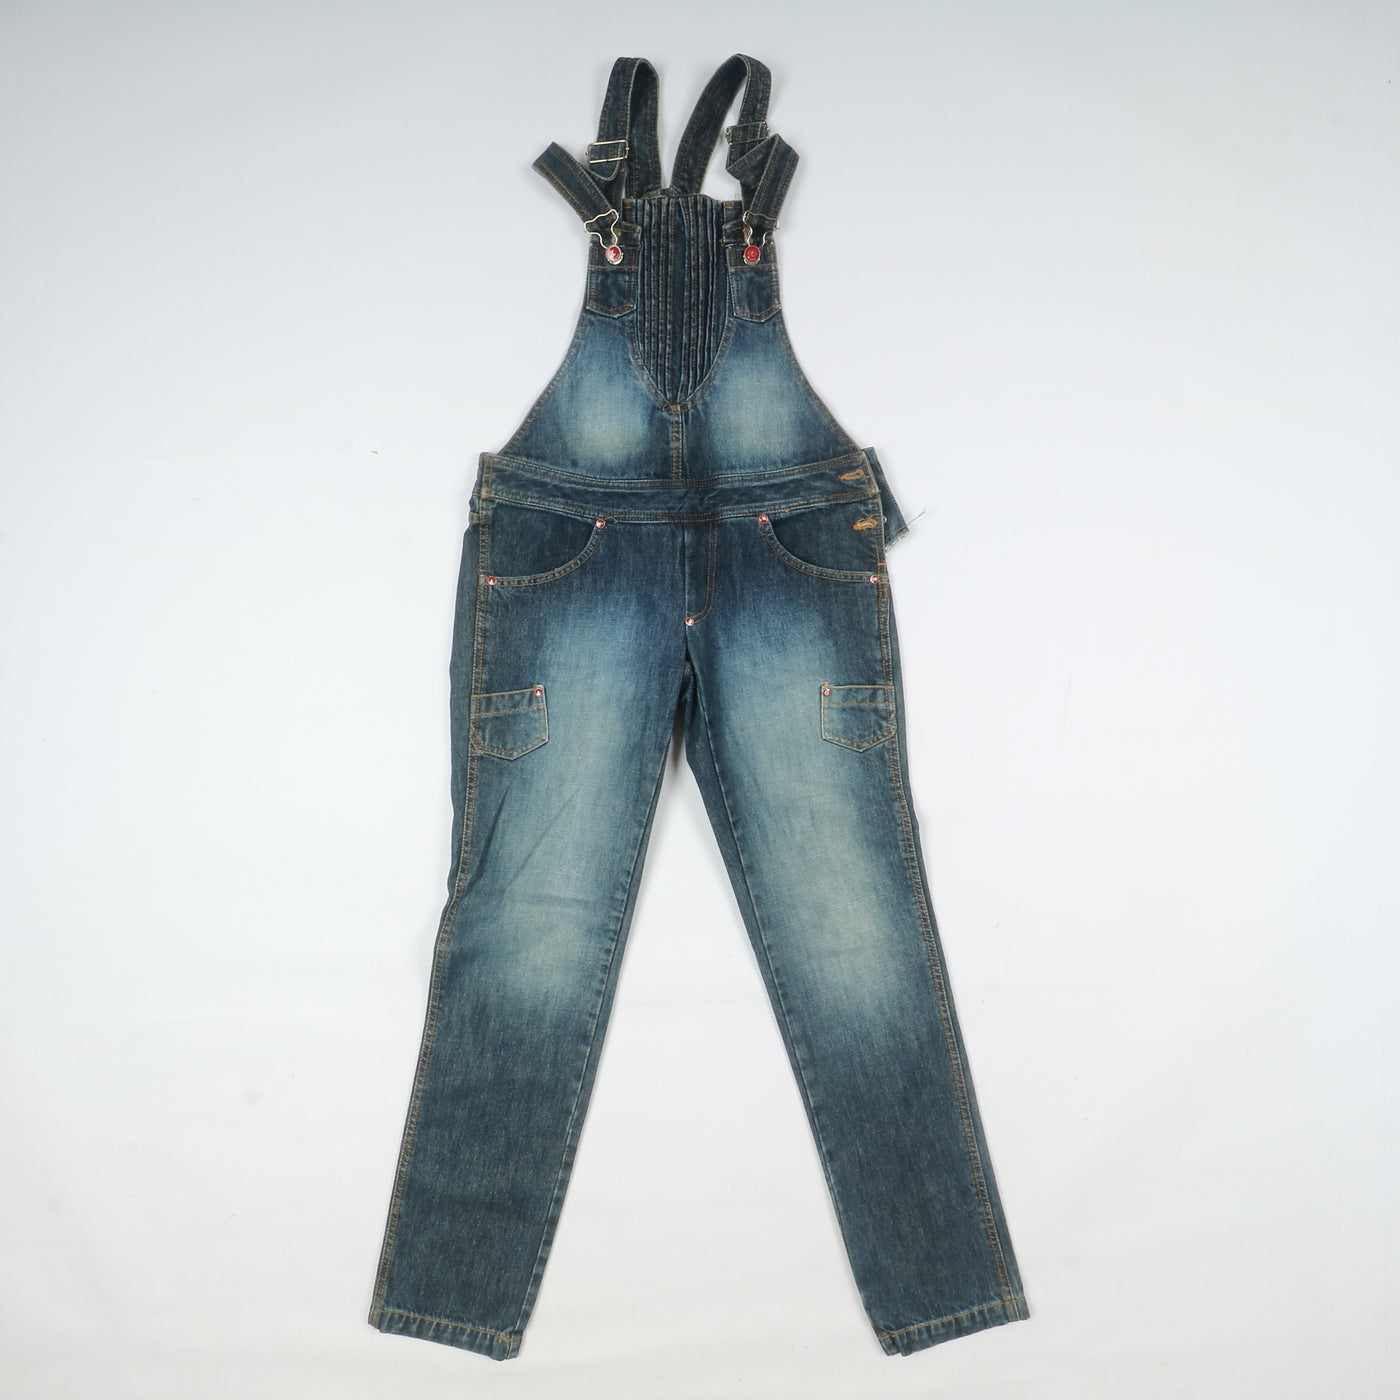 Salopette jeans vintage e deadstock uomo - donna stock da 28pz